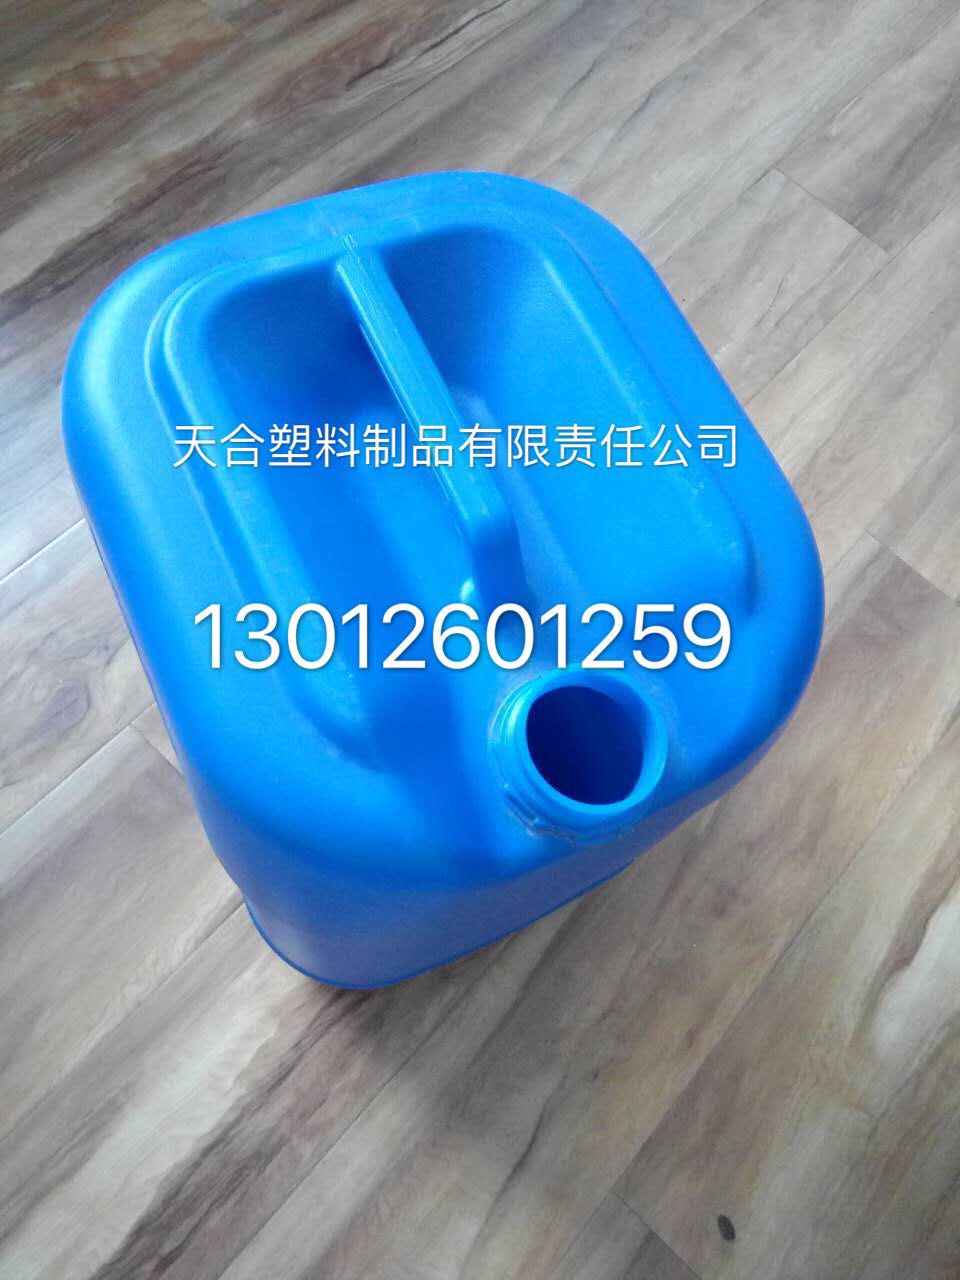    塑料桶25L生产厂家 防腐蚀 耐酸碱 